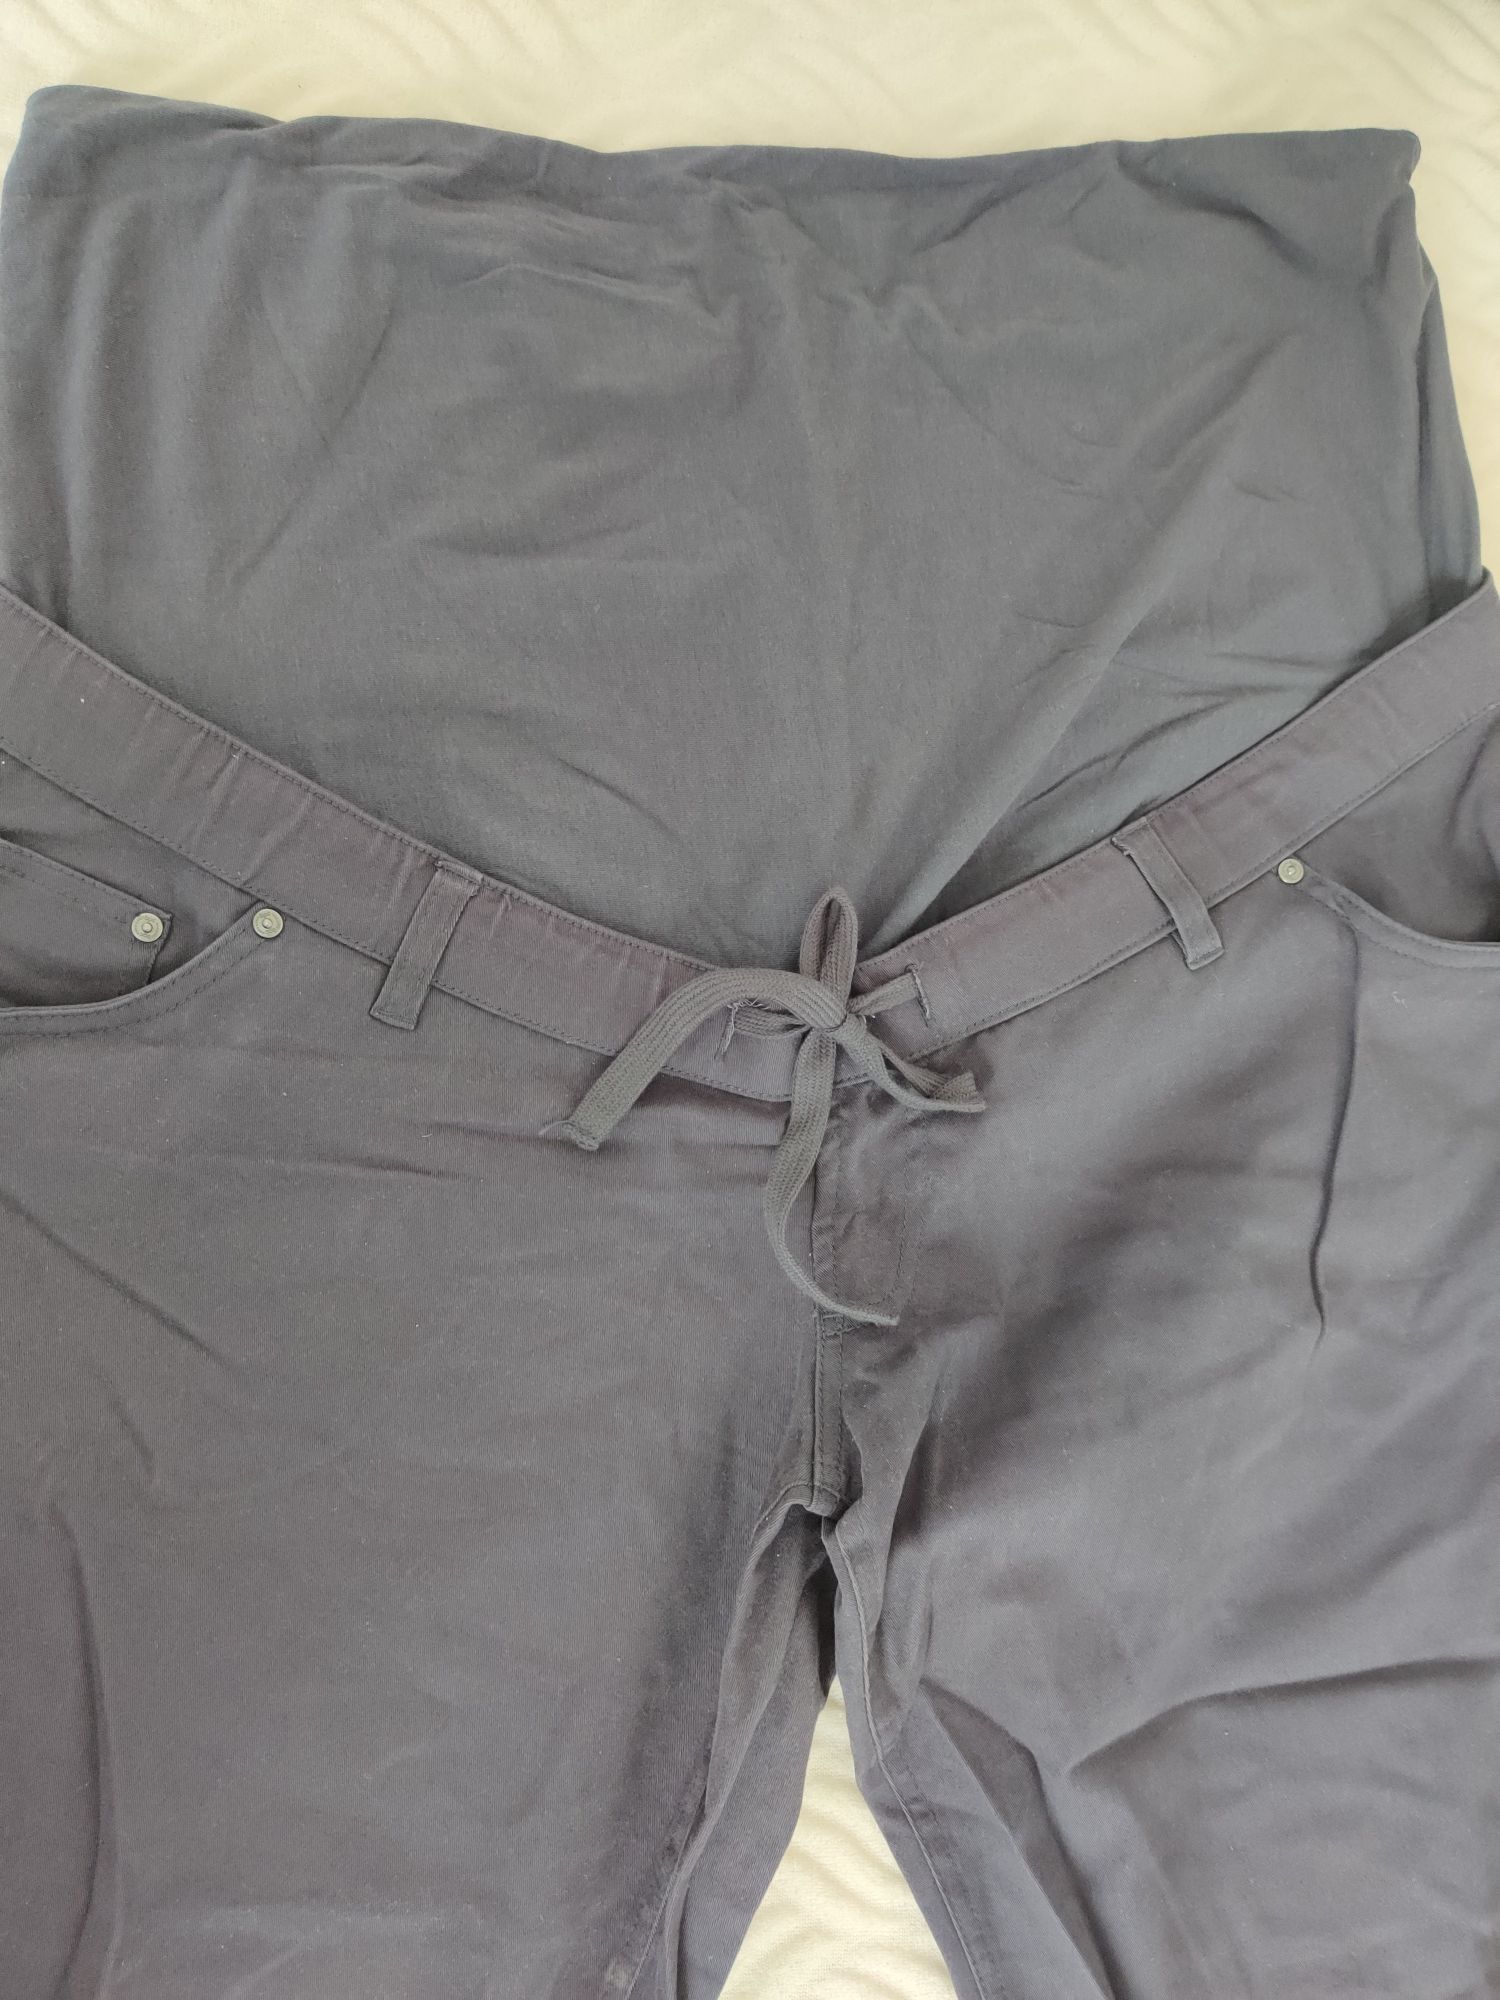 Spodnie ciążowe XL/XXL Bonprix r.46